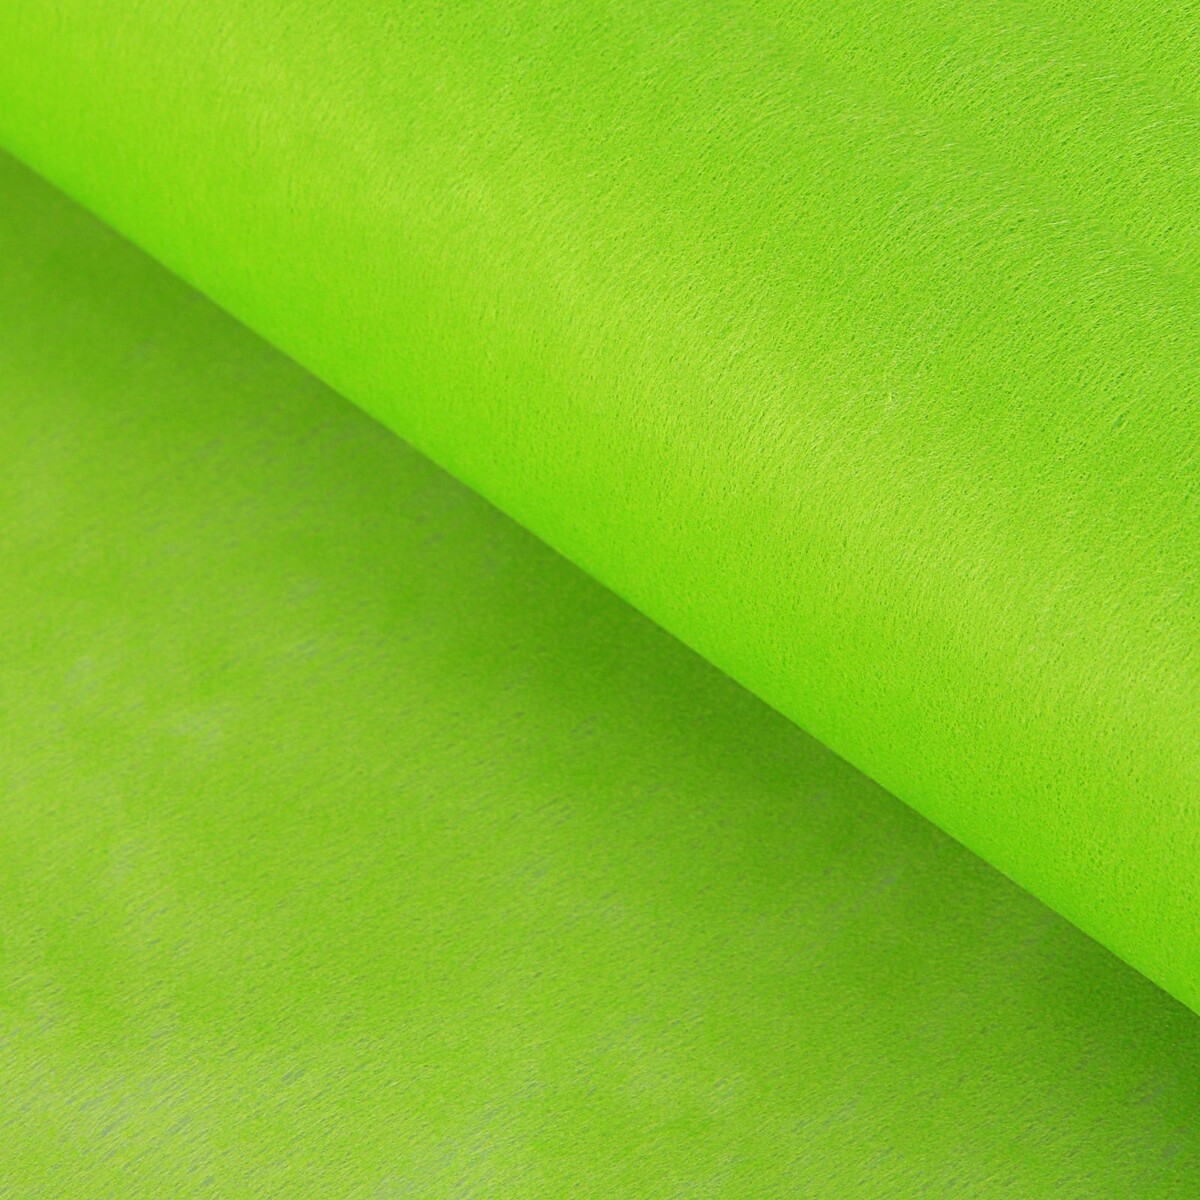 Фетр для упаковок и поделок, однотонный, салатовый, зеленый, двусторонний, рулон 1шт., 0,5 x 20 м мяч для художественной гимнастики однотонный d19см torres пвх ag 19 05 зеленый